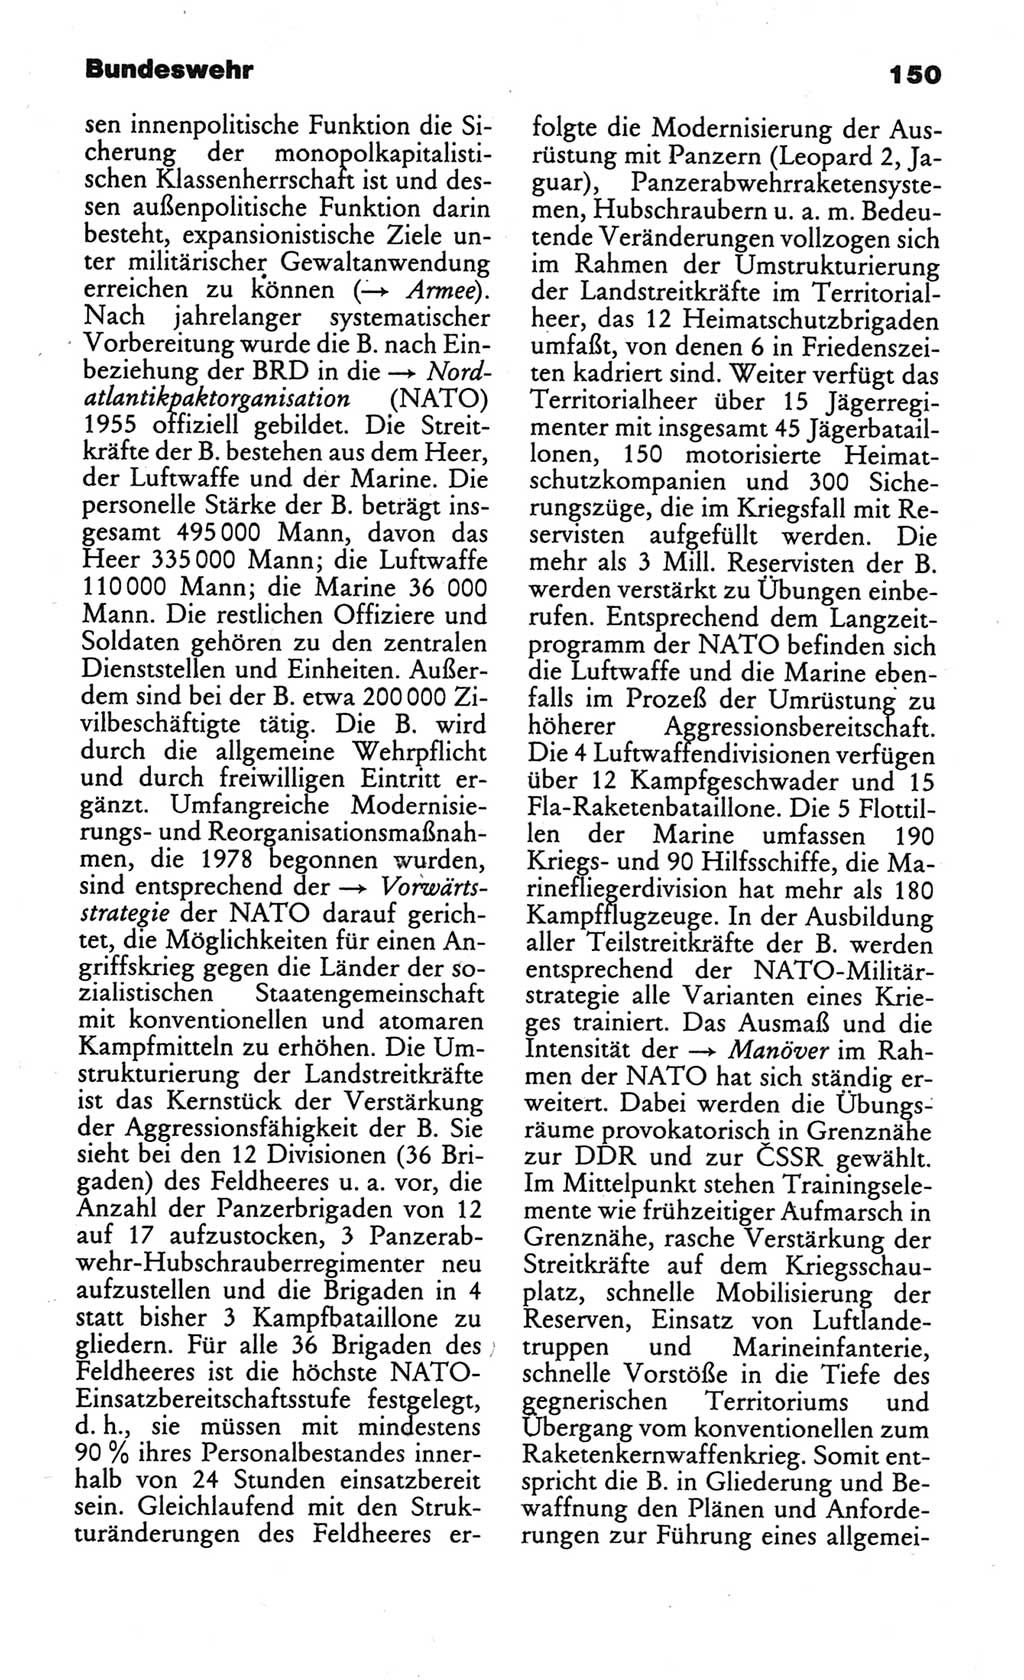 Kleines politisches Wörterbuch [Deutsche Demokratische Republik (DDR)] 1986, Seite 150 (Kl. pol. Wb. DDR 1986, S. 150)